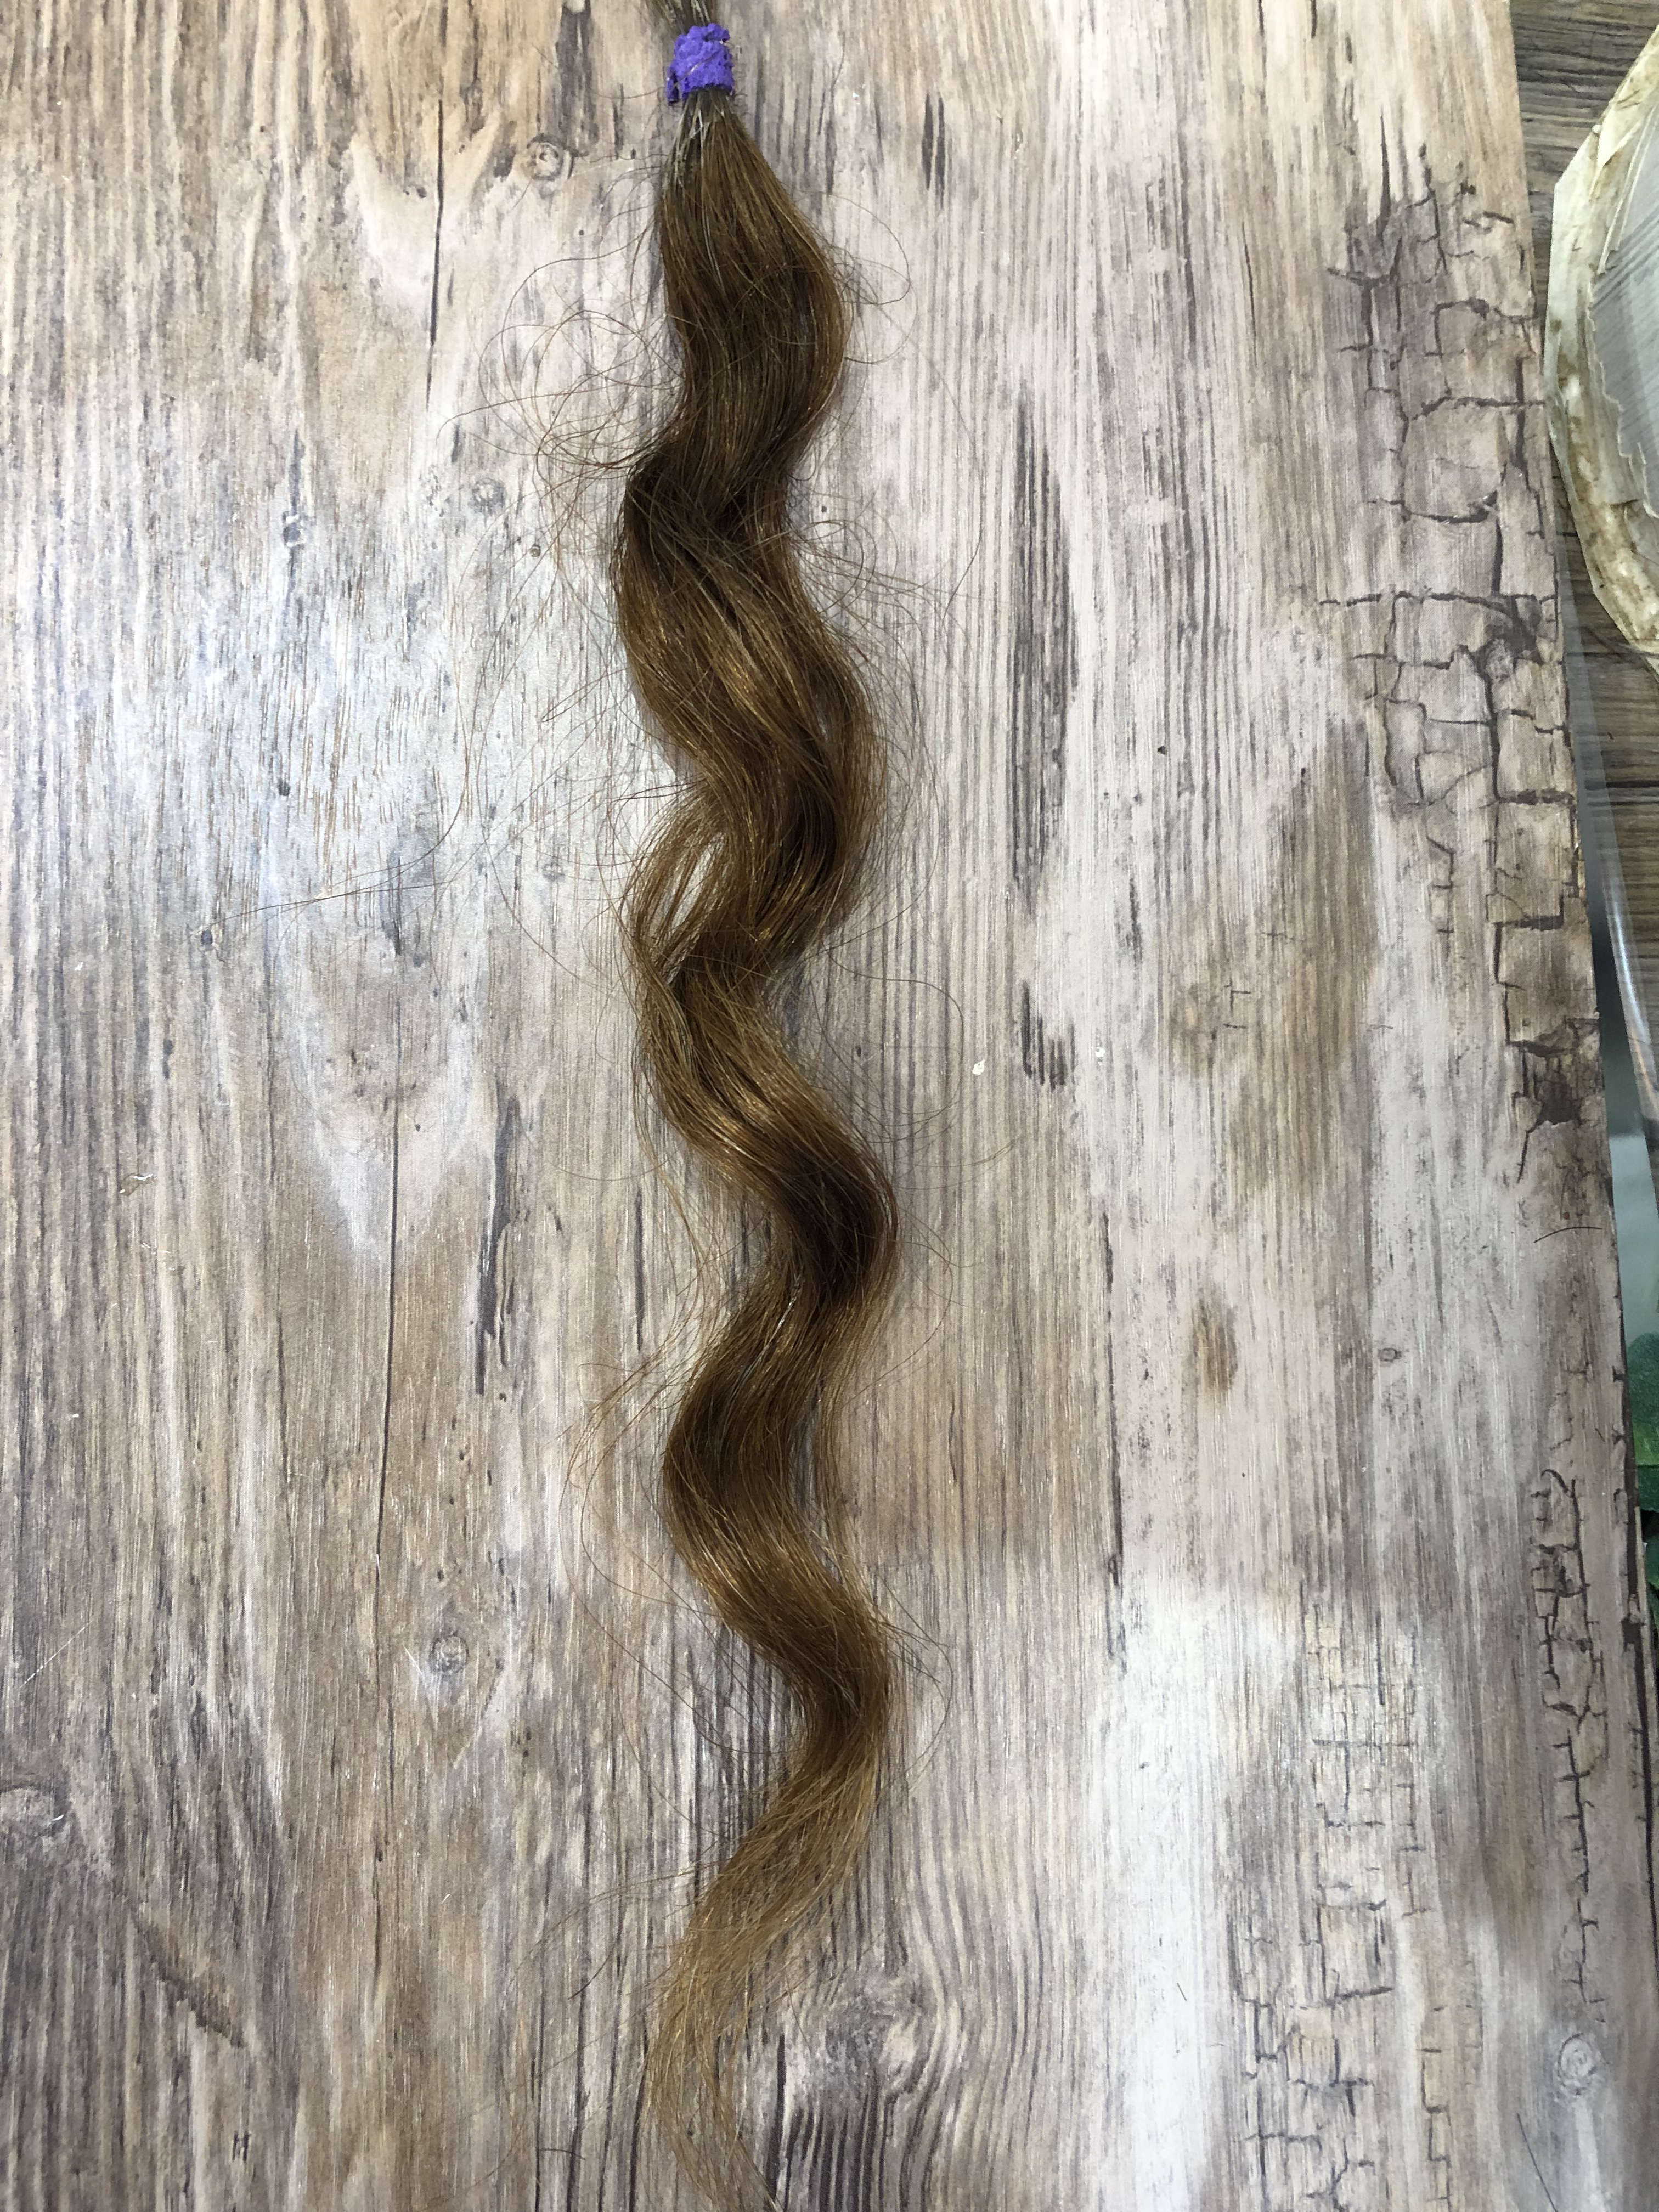 酸熱トリートメントでパーマが落ちるか実験 Blog 市川市本八幡の美容室 美容院hair Chic ヘアシック